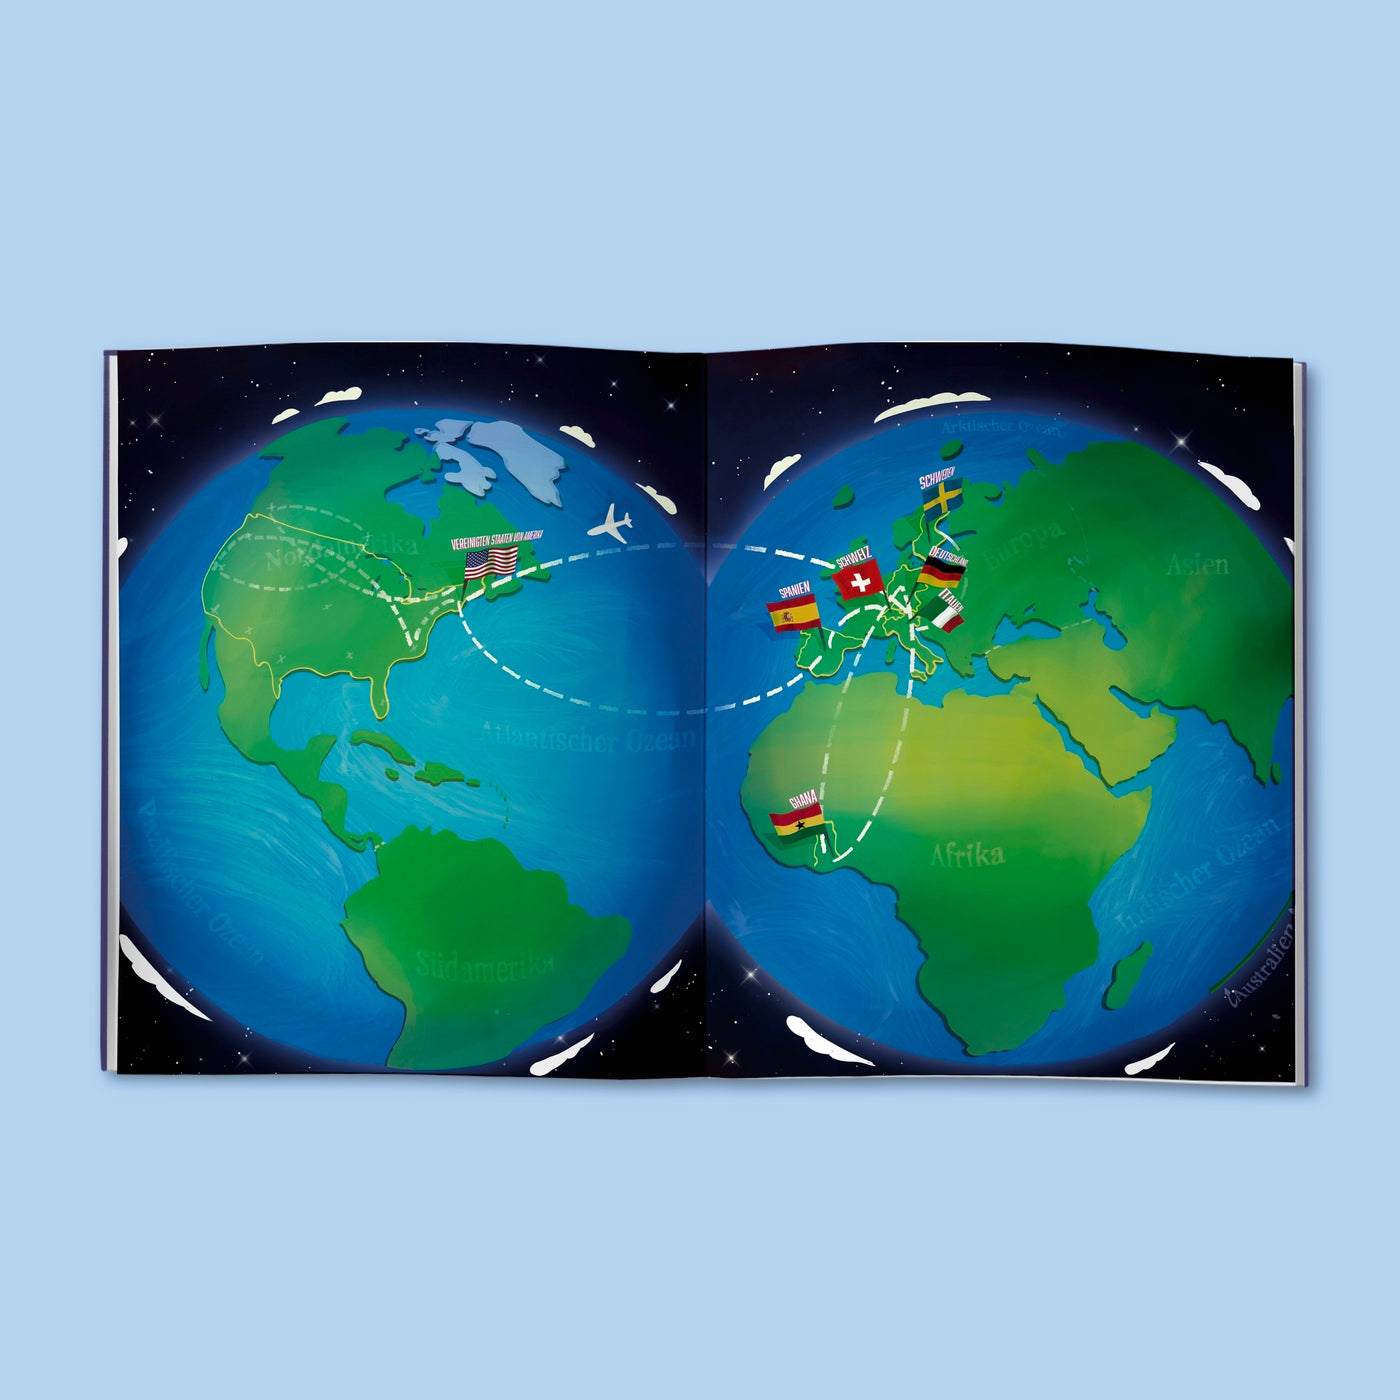 Auf der Doppelseite des Kinderbuchs sind sowohl links als auch rechts Illustrationen der Erde zu sehen. Links mit Blick auf Nord- und Südamerika. Rechts mit Blick auf Europa, Afrika und Asien. Es sind die Flaggen von verschiedenen Ländern eingezeichnet und Flugwege zwischen diesen Ländern. 